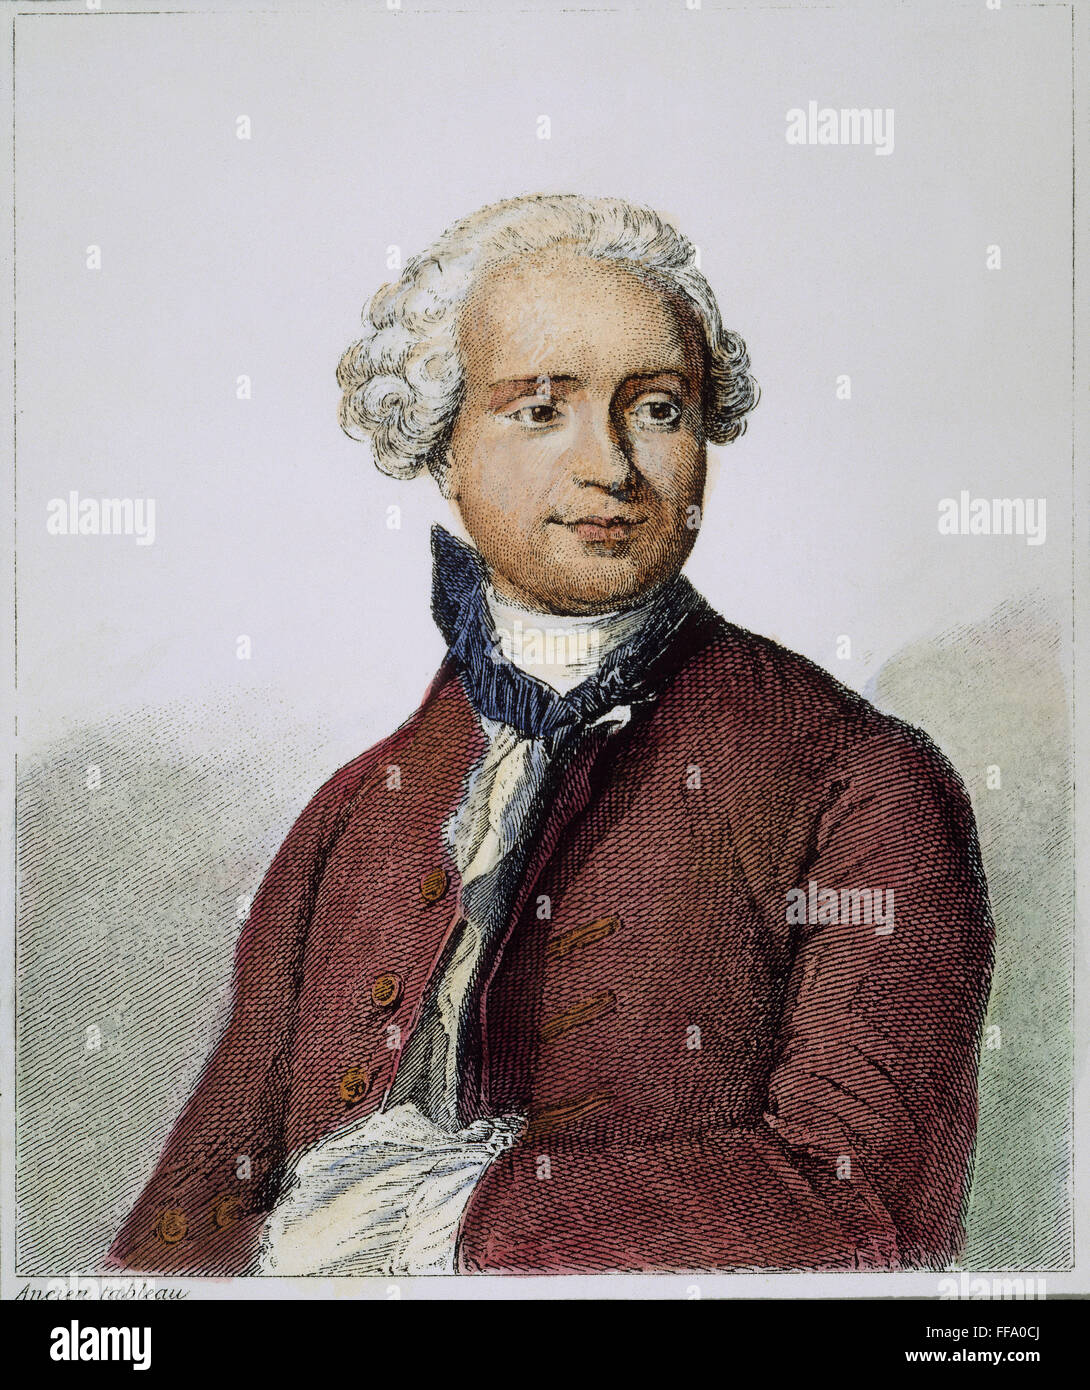 JEAN LE ROND D'Alembert /n(1717 ?-1783). Le mathématicien, philosophe et scientifique. La gravure française, 19e siècle. Banque D'Images